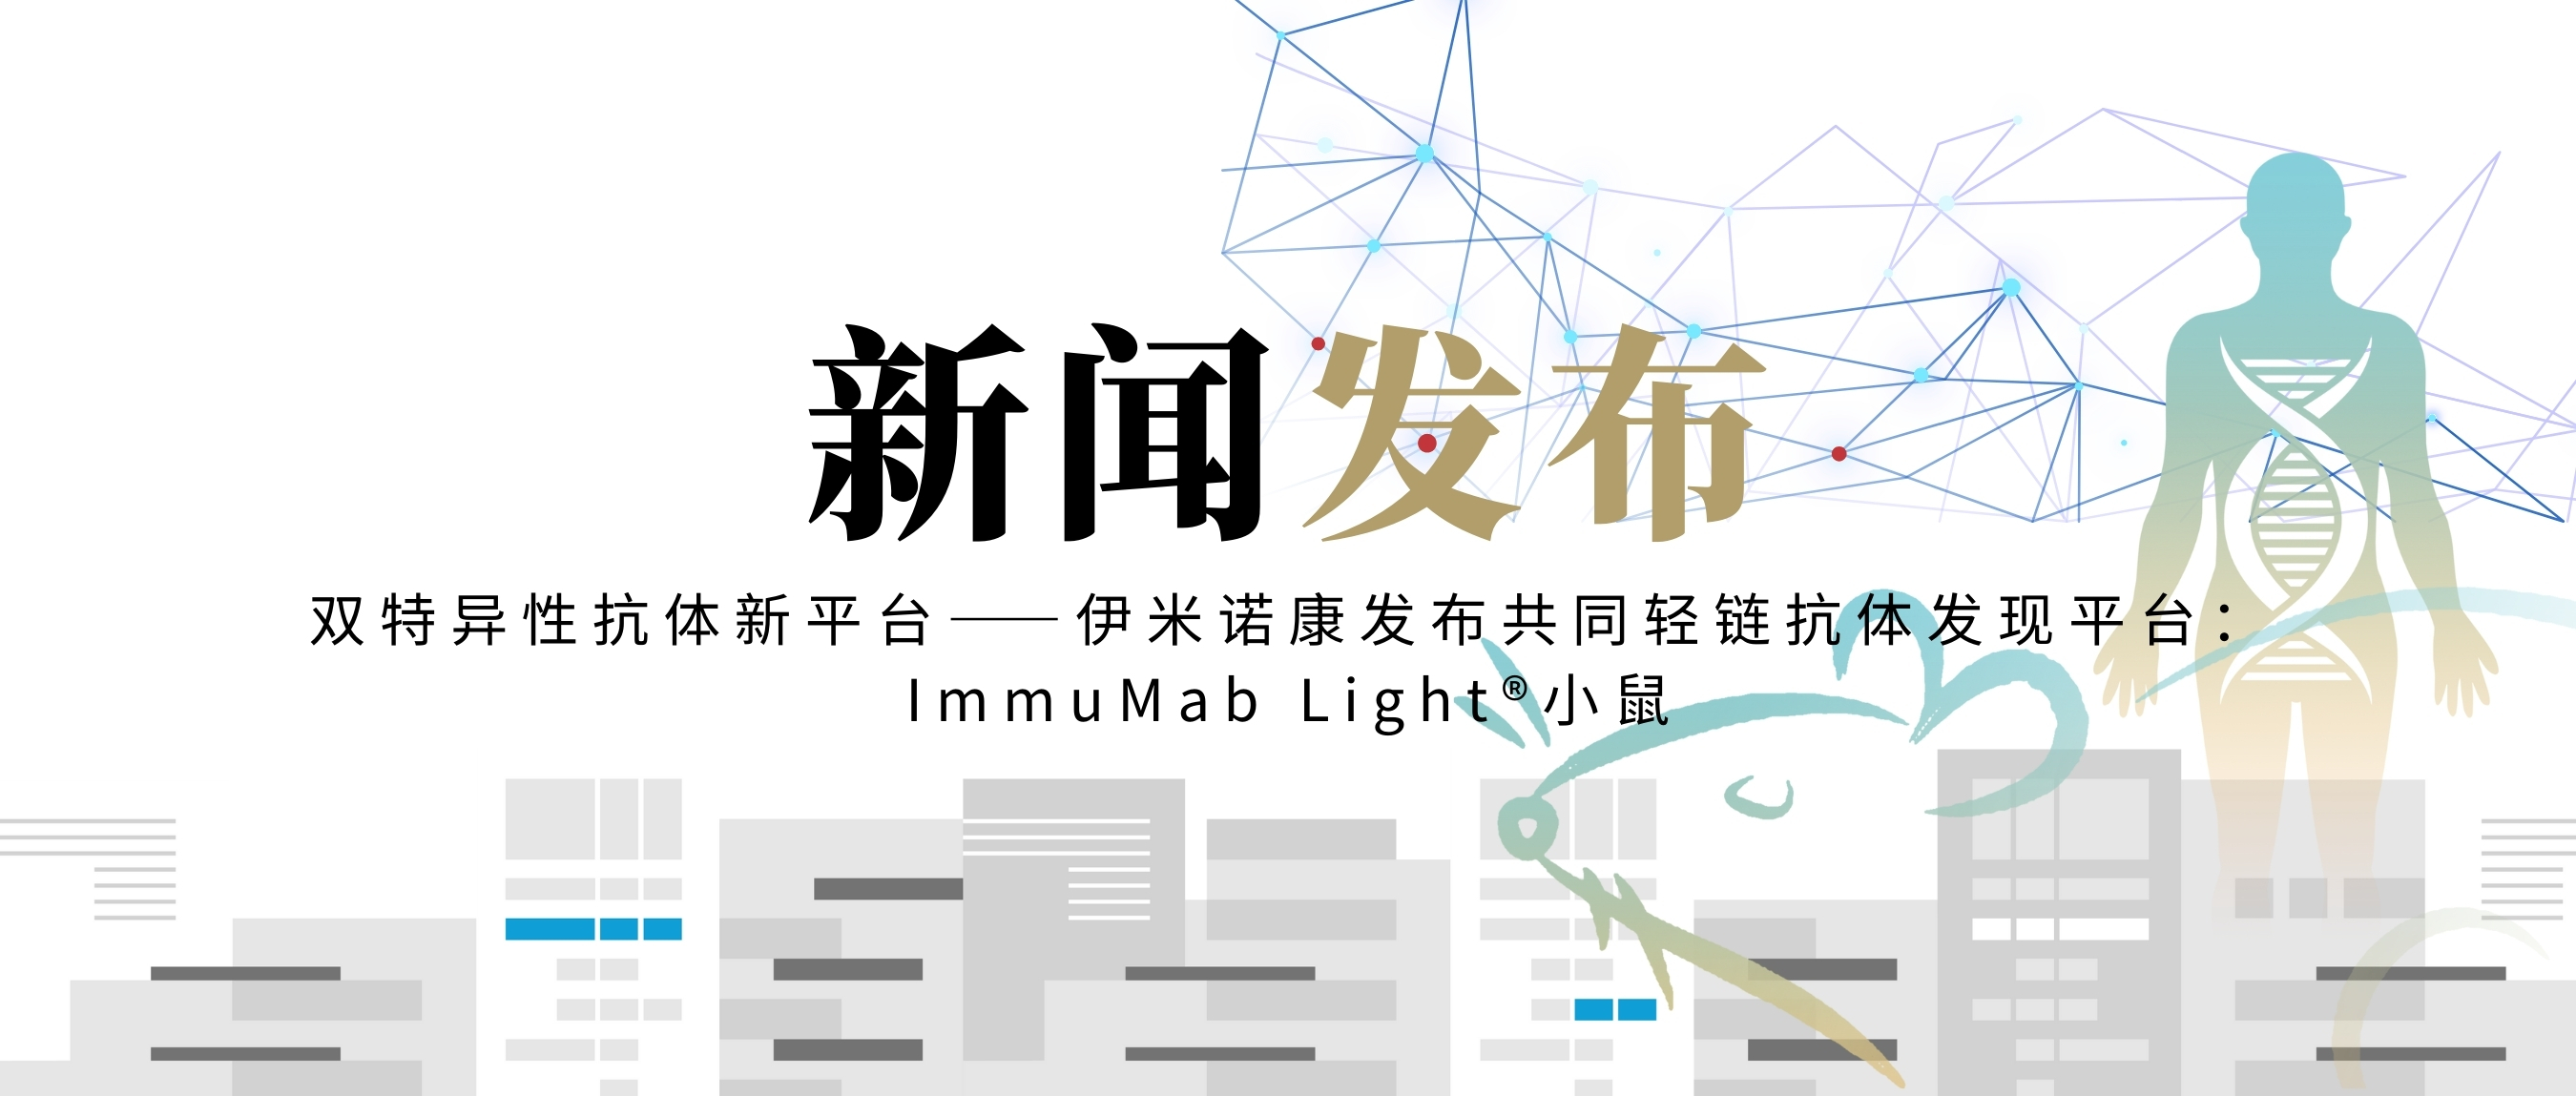 双特异性抗体新平台——伊米诺康发布共同轻链抗体发现平台：ImmuMab Light®小鼠